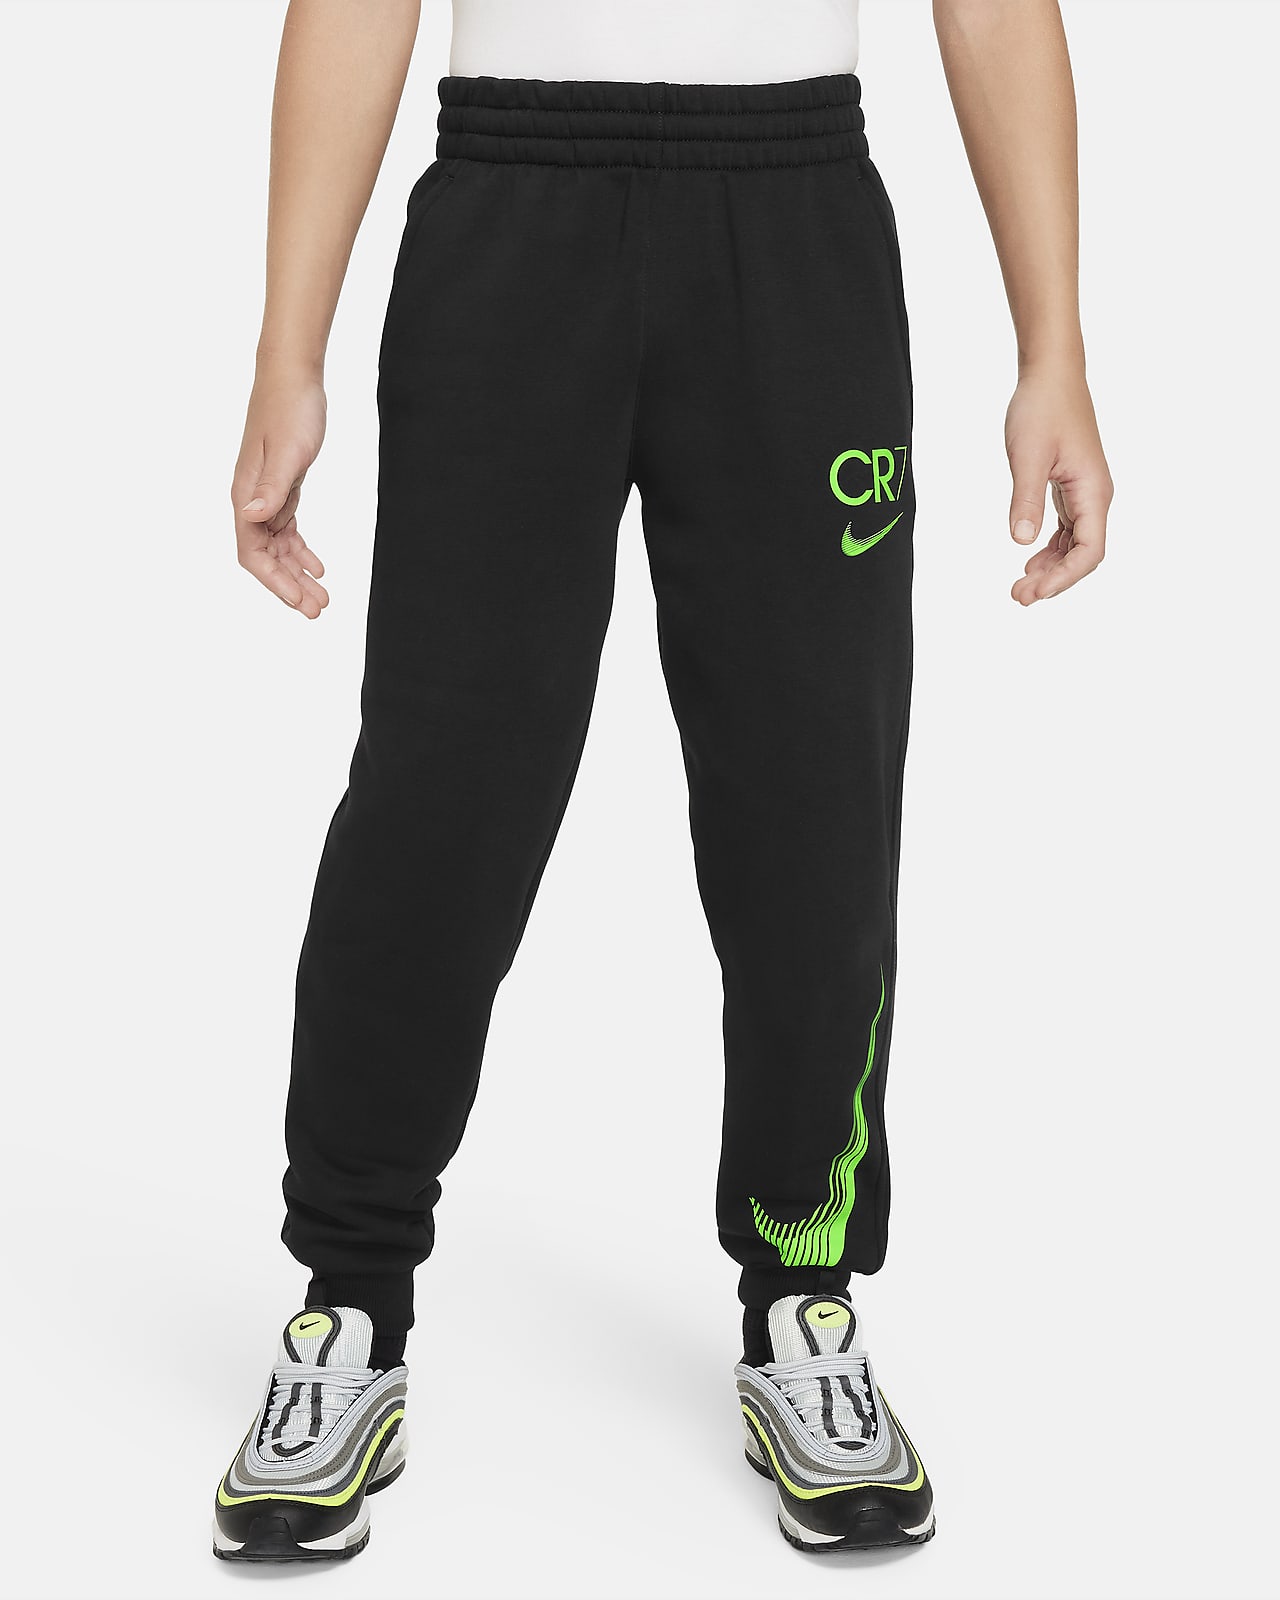 CR7 Pantalons jogger de futbol Club Fleece - Nen/a